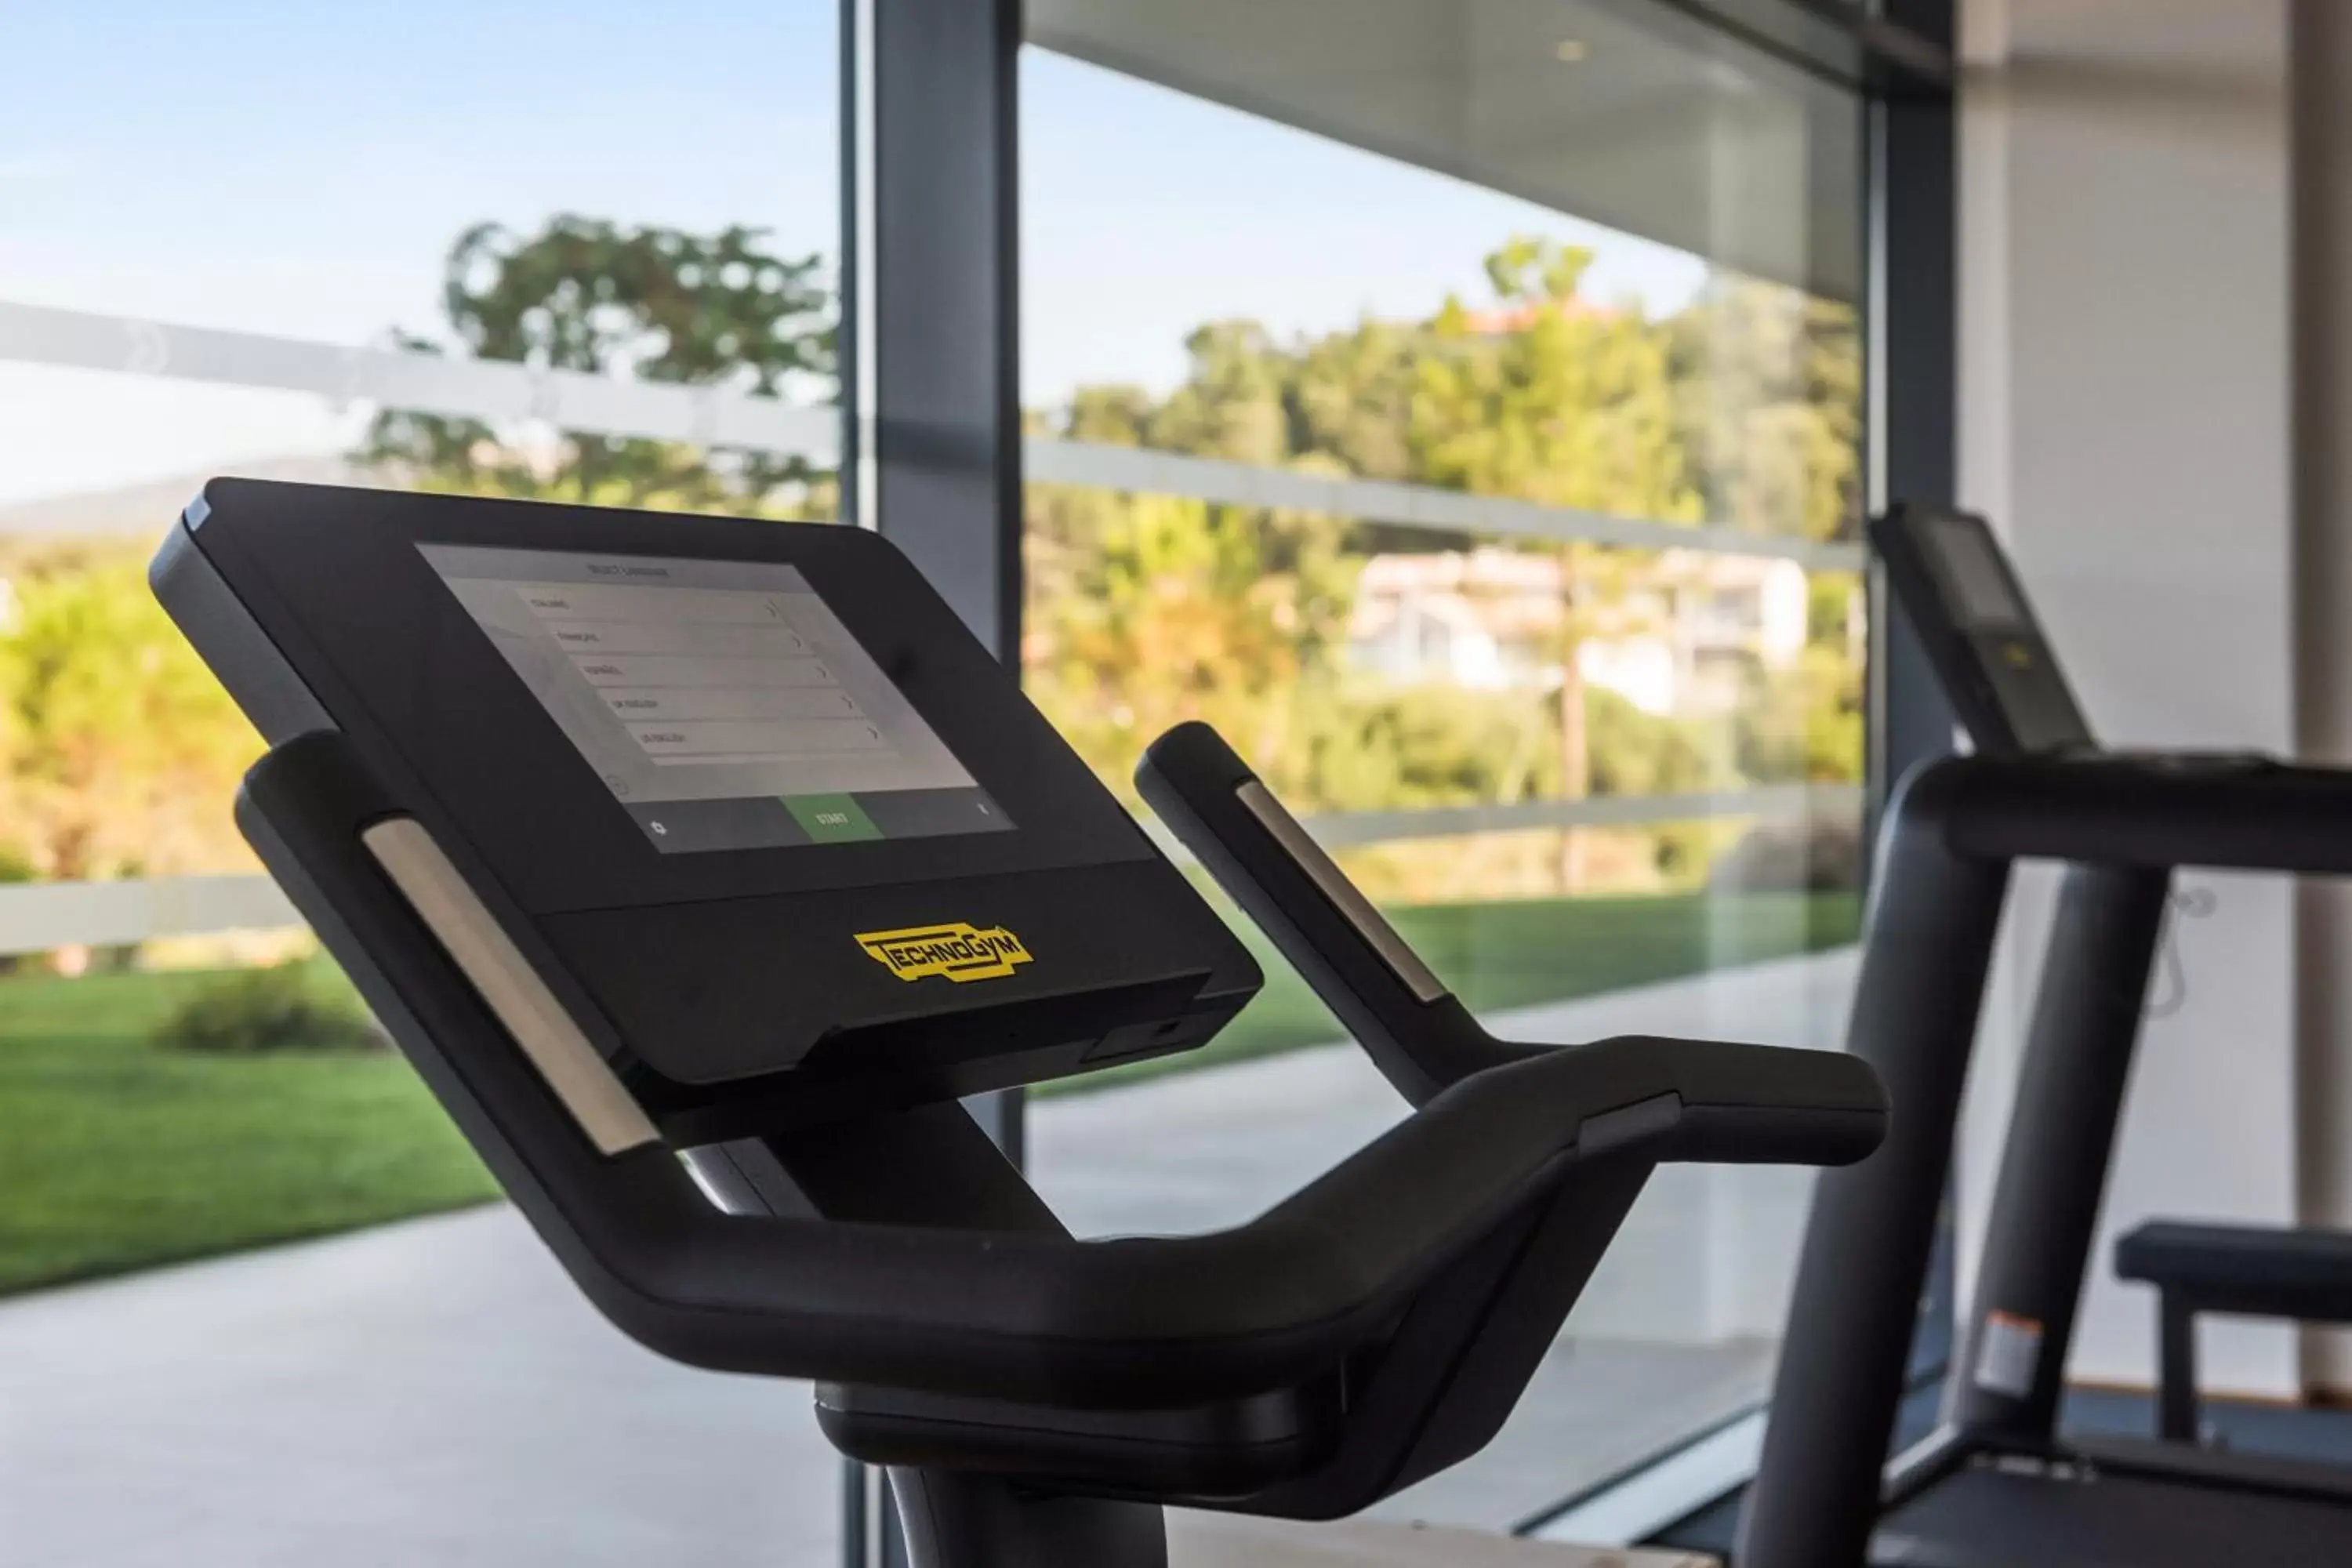 Fitness centre/facilities, Fitness Center/Facilities in Golden Tulip Porto-Vecchio